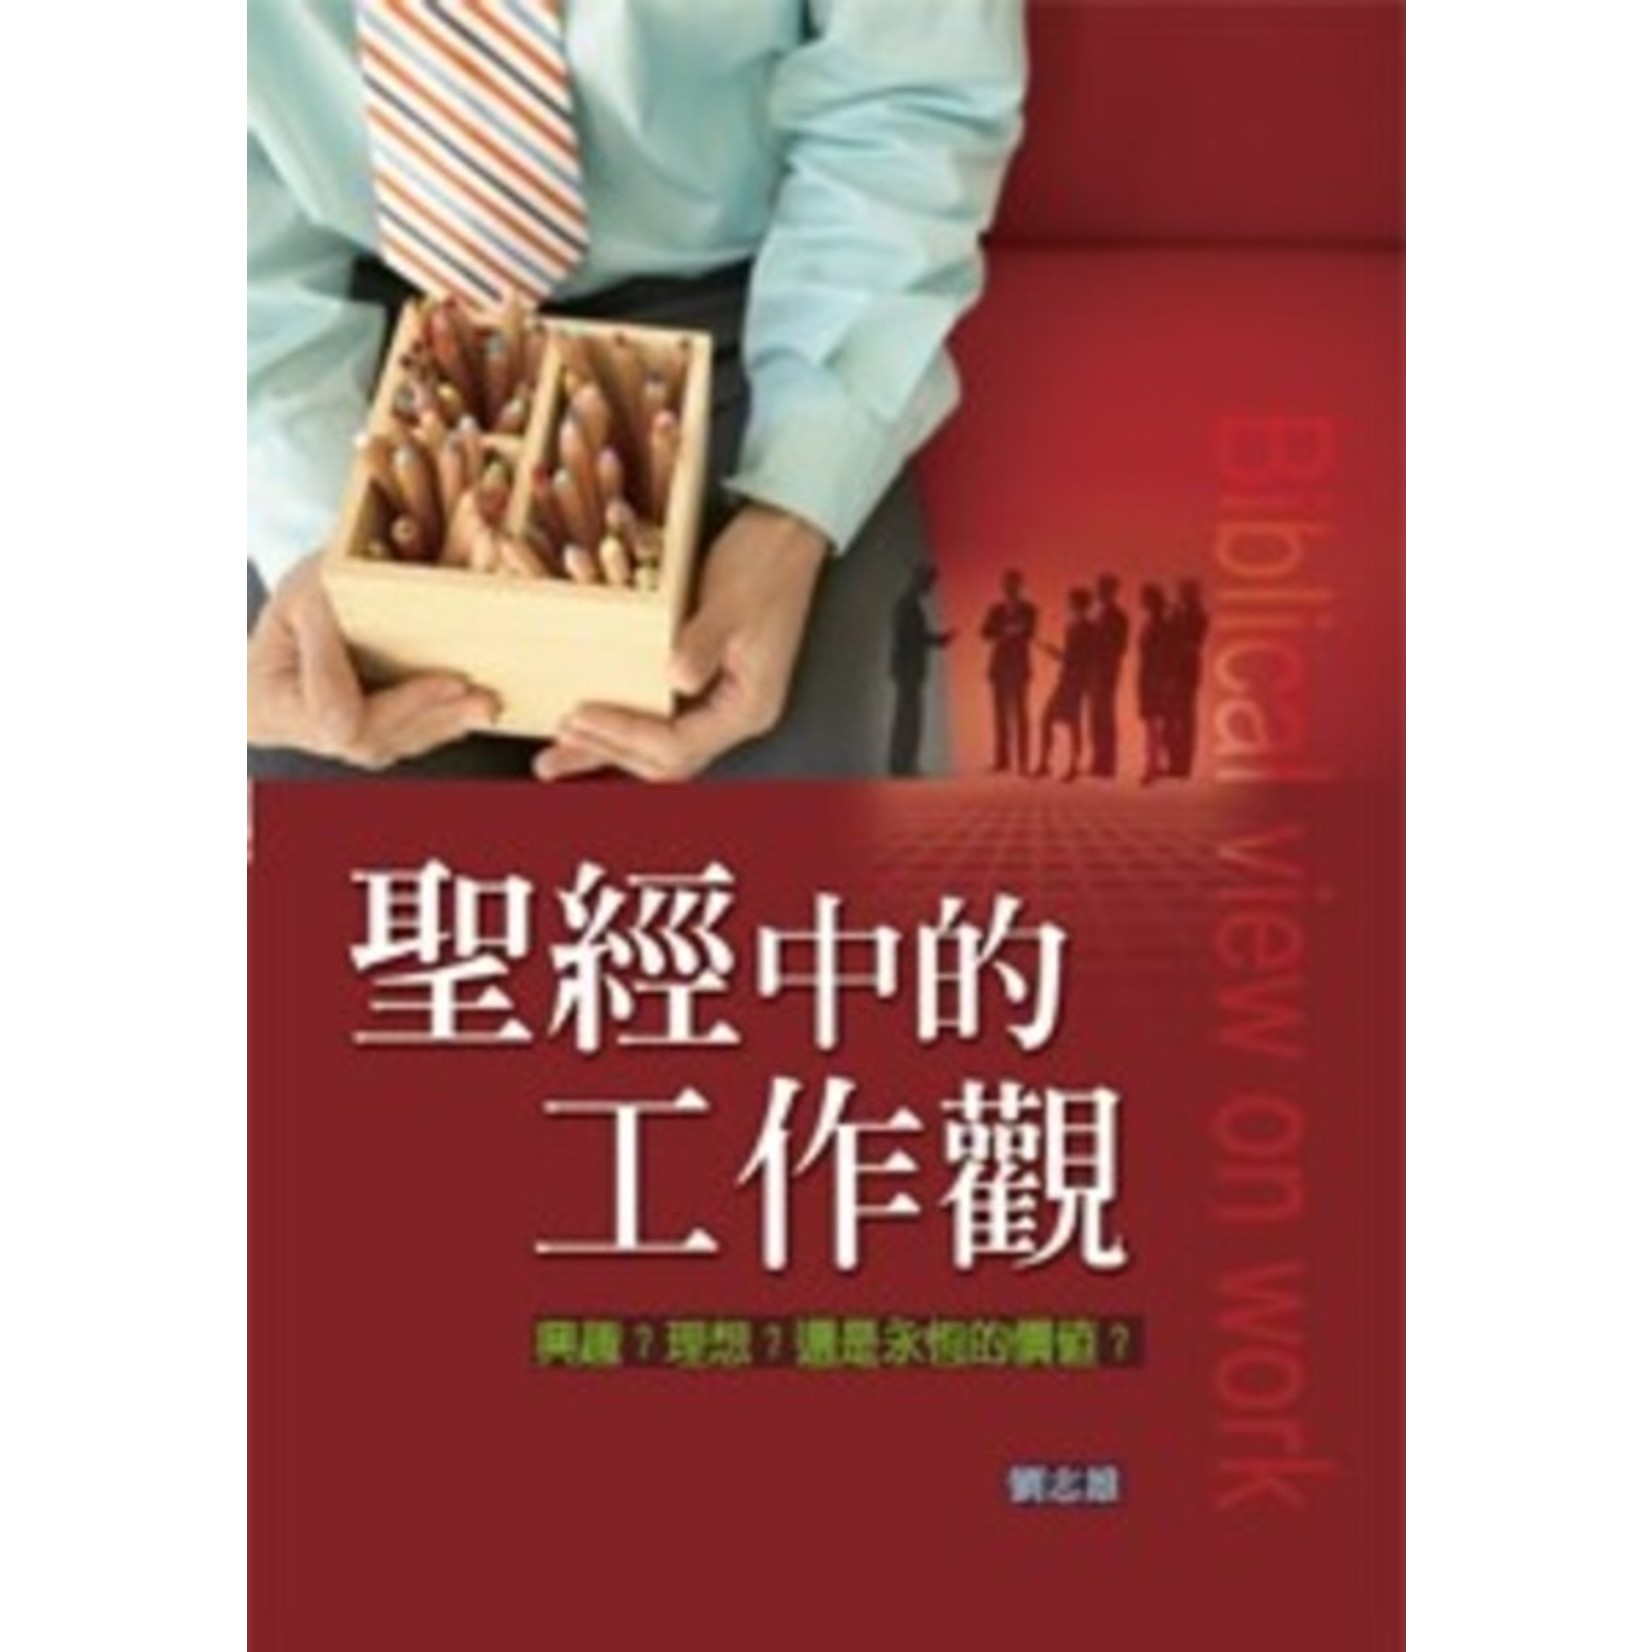 道聲 Taosheng Taiwan 聖經中的工作觀：興趣？理想？還是永恆的價值？